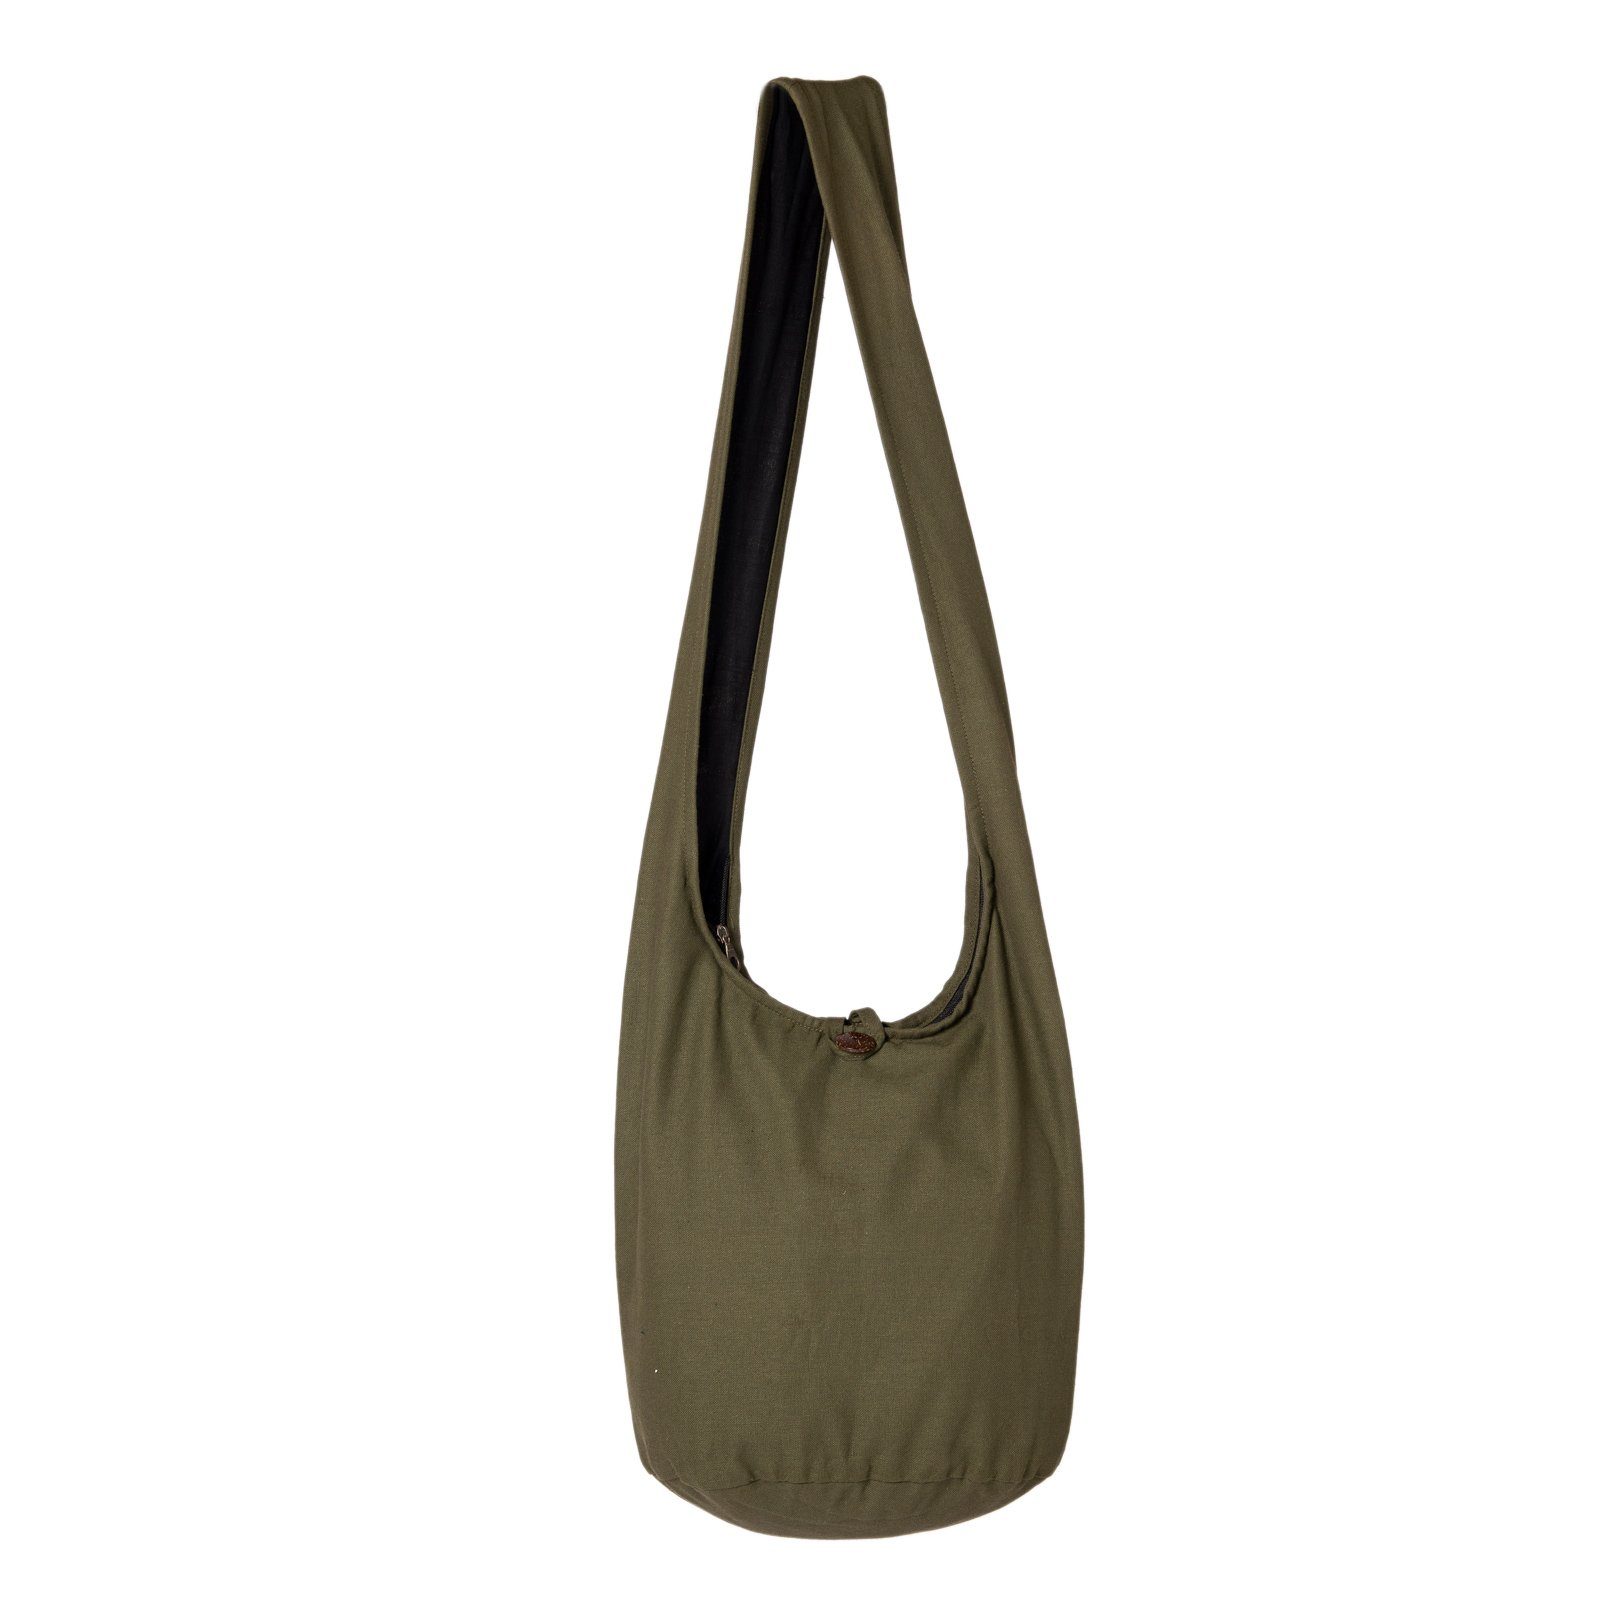 PANASIAM Beuteltasche Schulterbeutel einfarbig Schultertasche aus 100% Baumwolle in 2 Größen, Umhängetasche auch als Wickeltasche Handtasche oder Strandtasche olivengrün